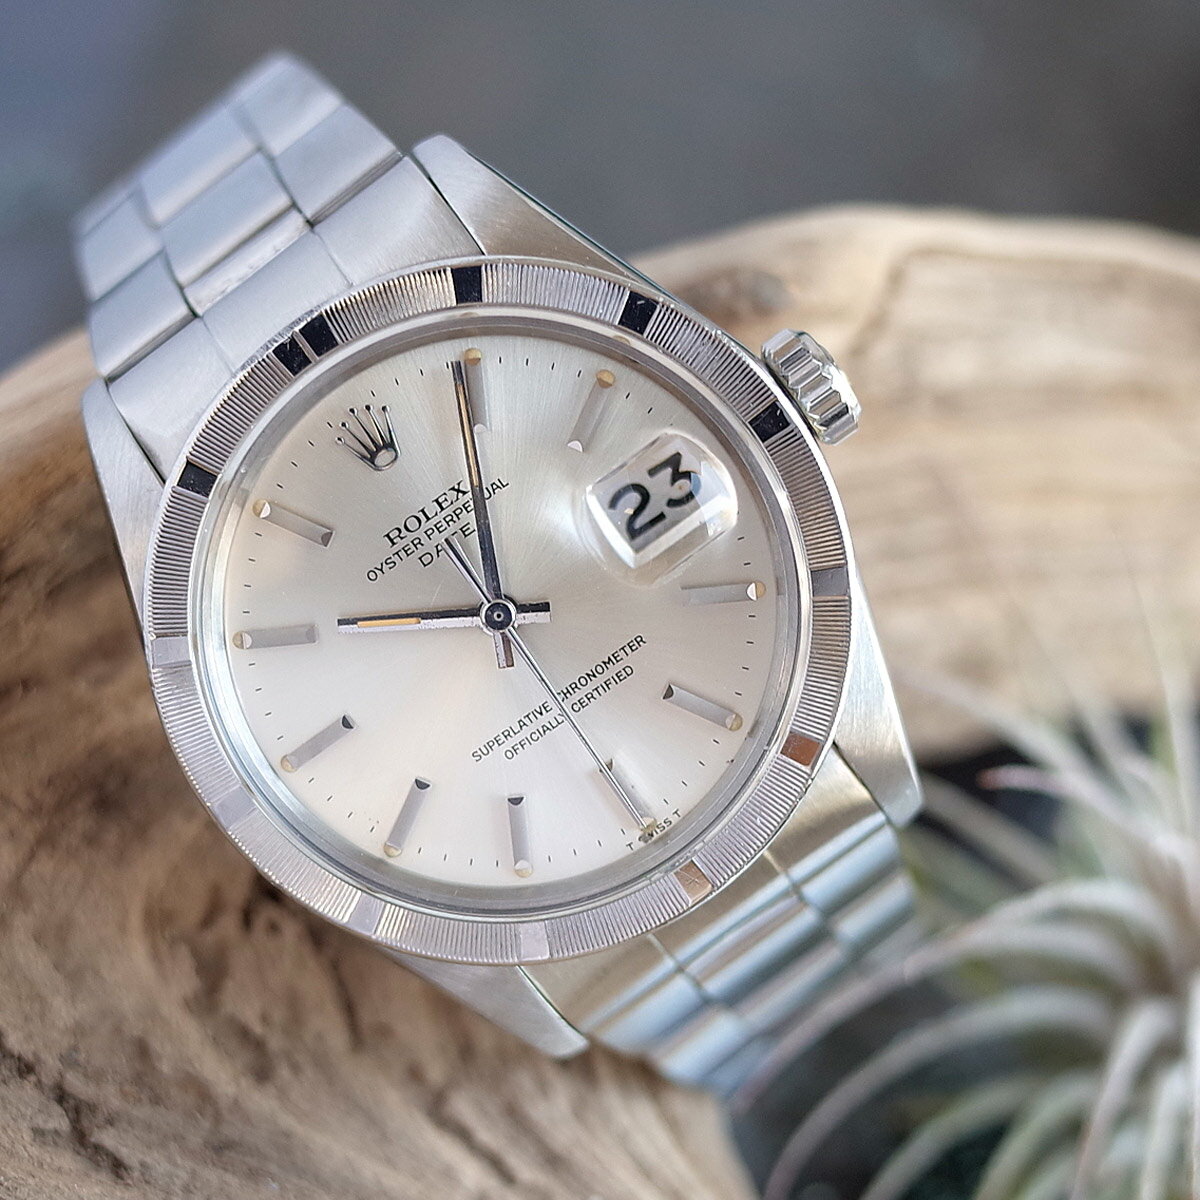 ロレックス オイスターパーペチュアルデイト 1501の価格一覧 - 腕時計 